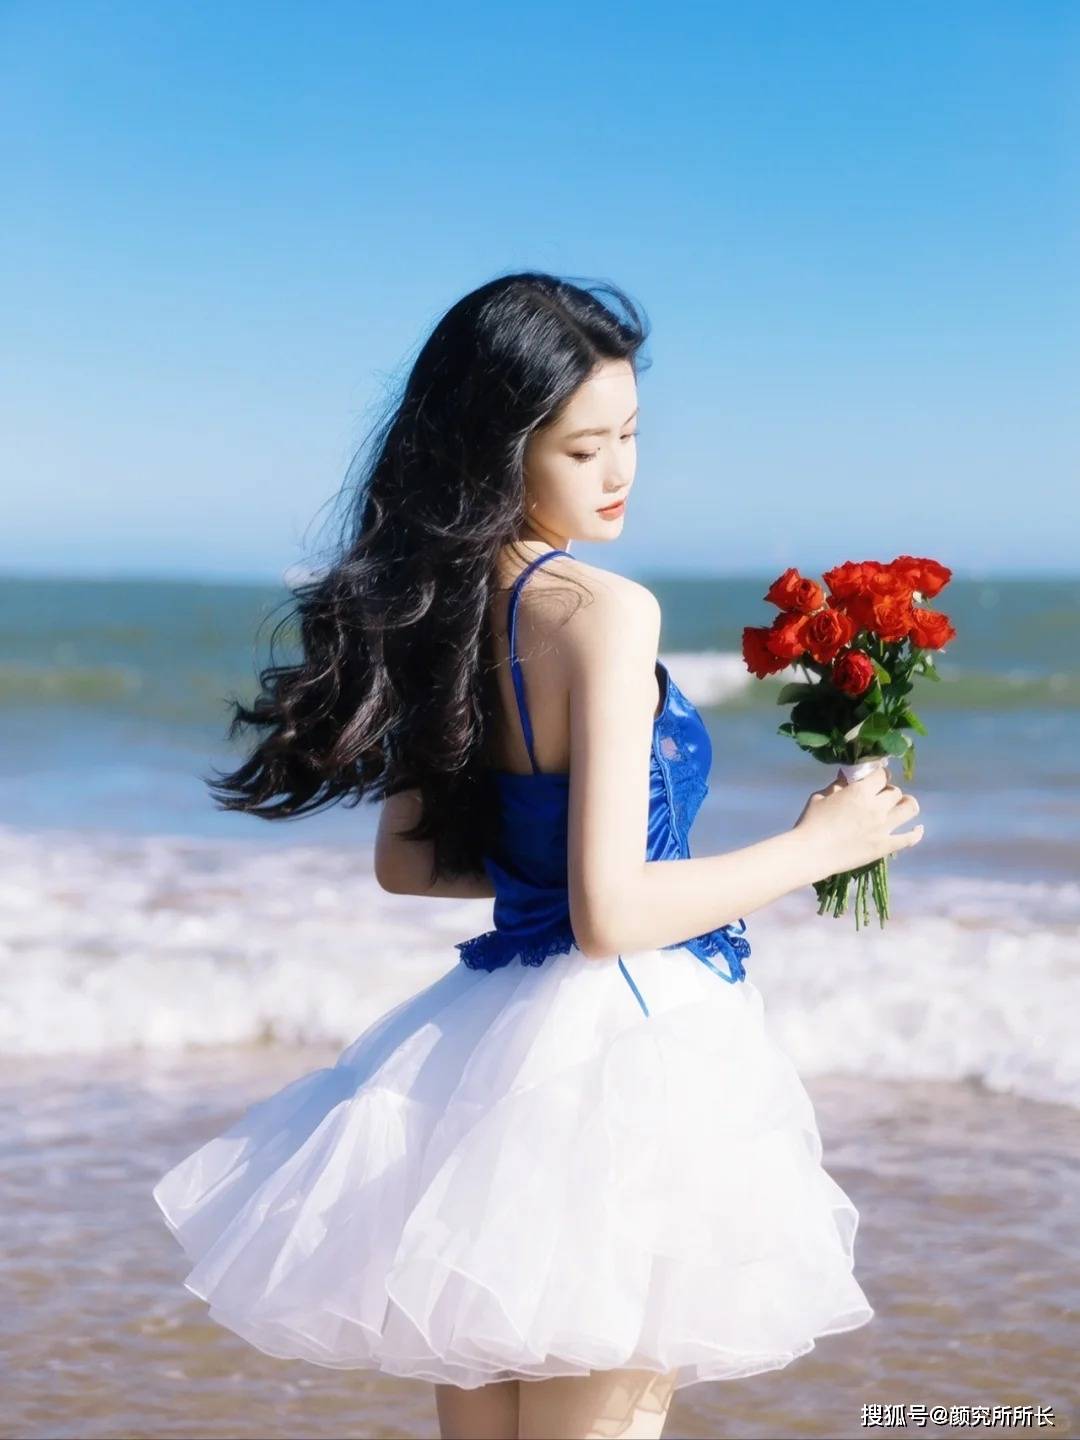 白皙柔美尤物的海边艺术穿搭:蓝色吊带背心搭配白色蓬松裙优雅迷人